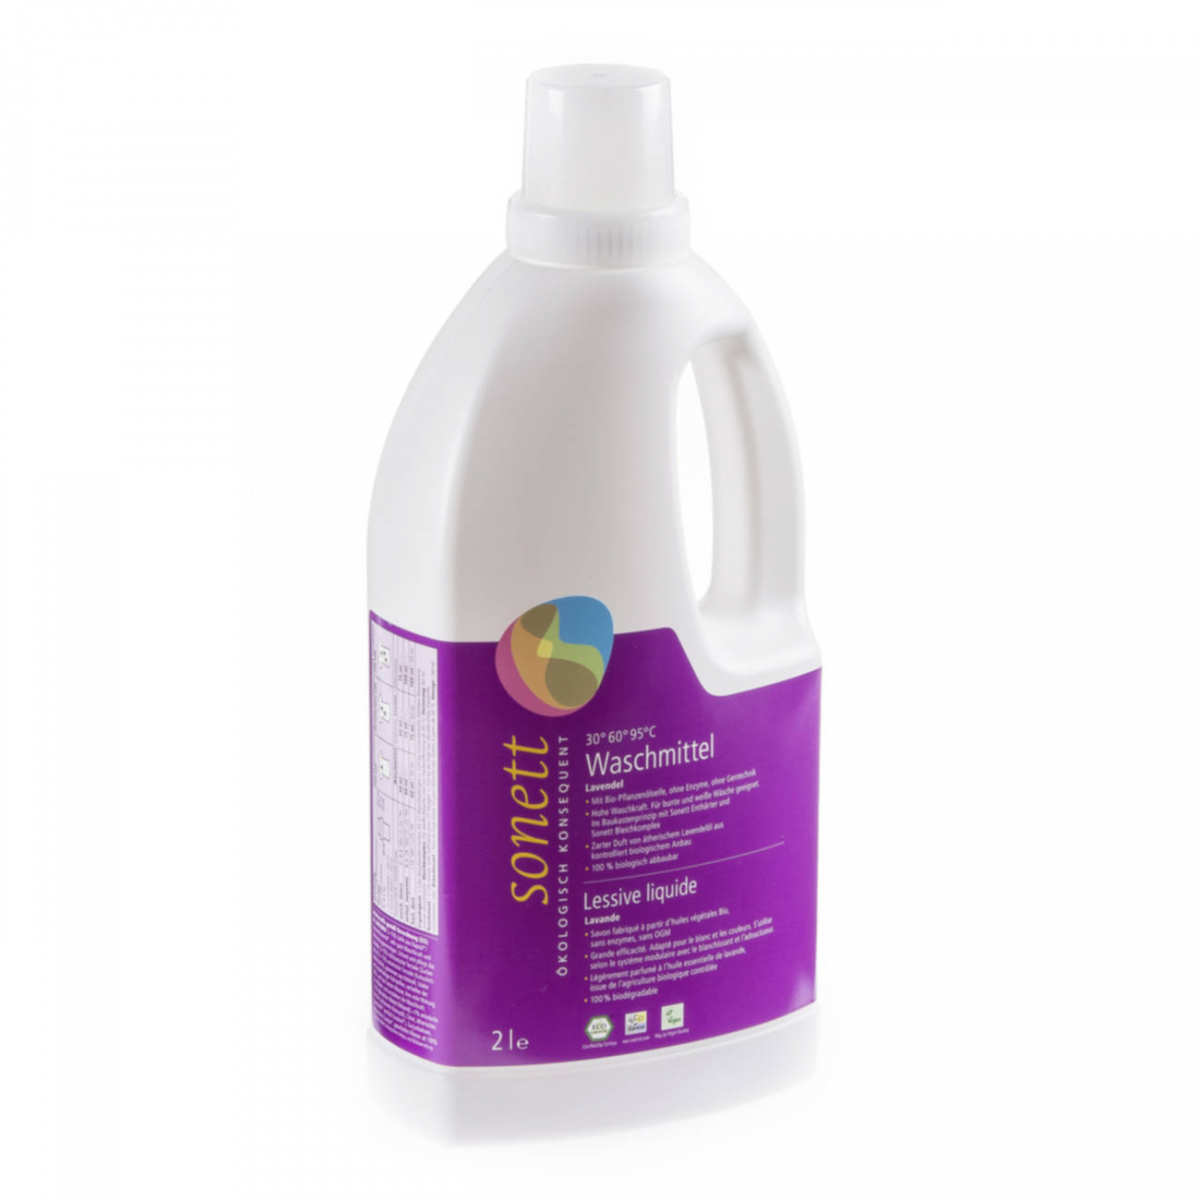 Waschmittel flüssig 30° - 95°C Lavendel Flasche 2 l/PET Einweg - Sonett